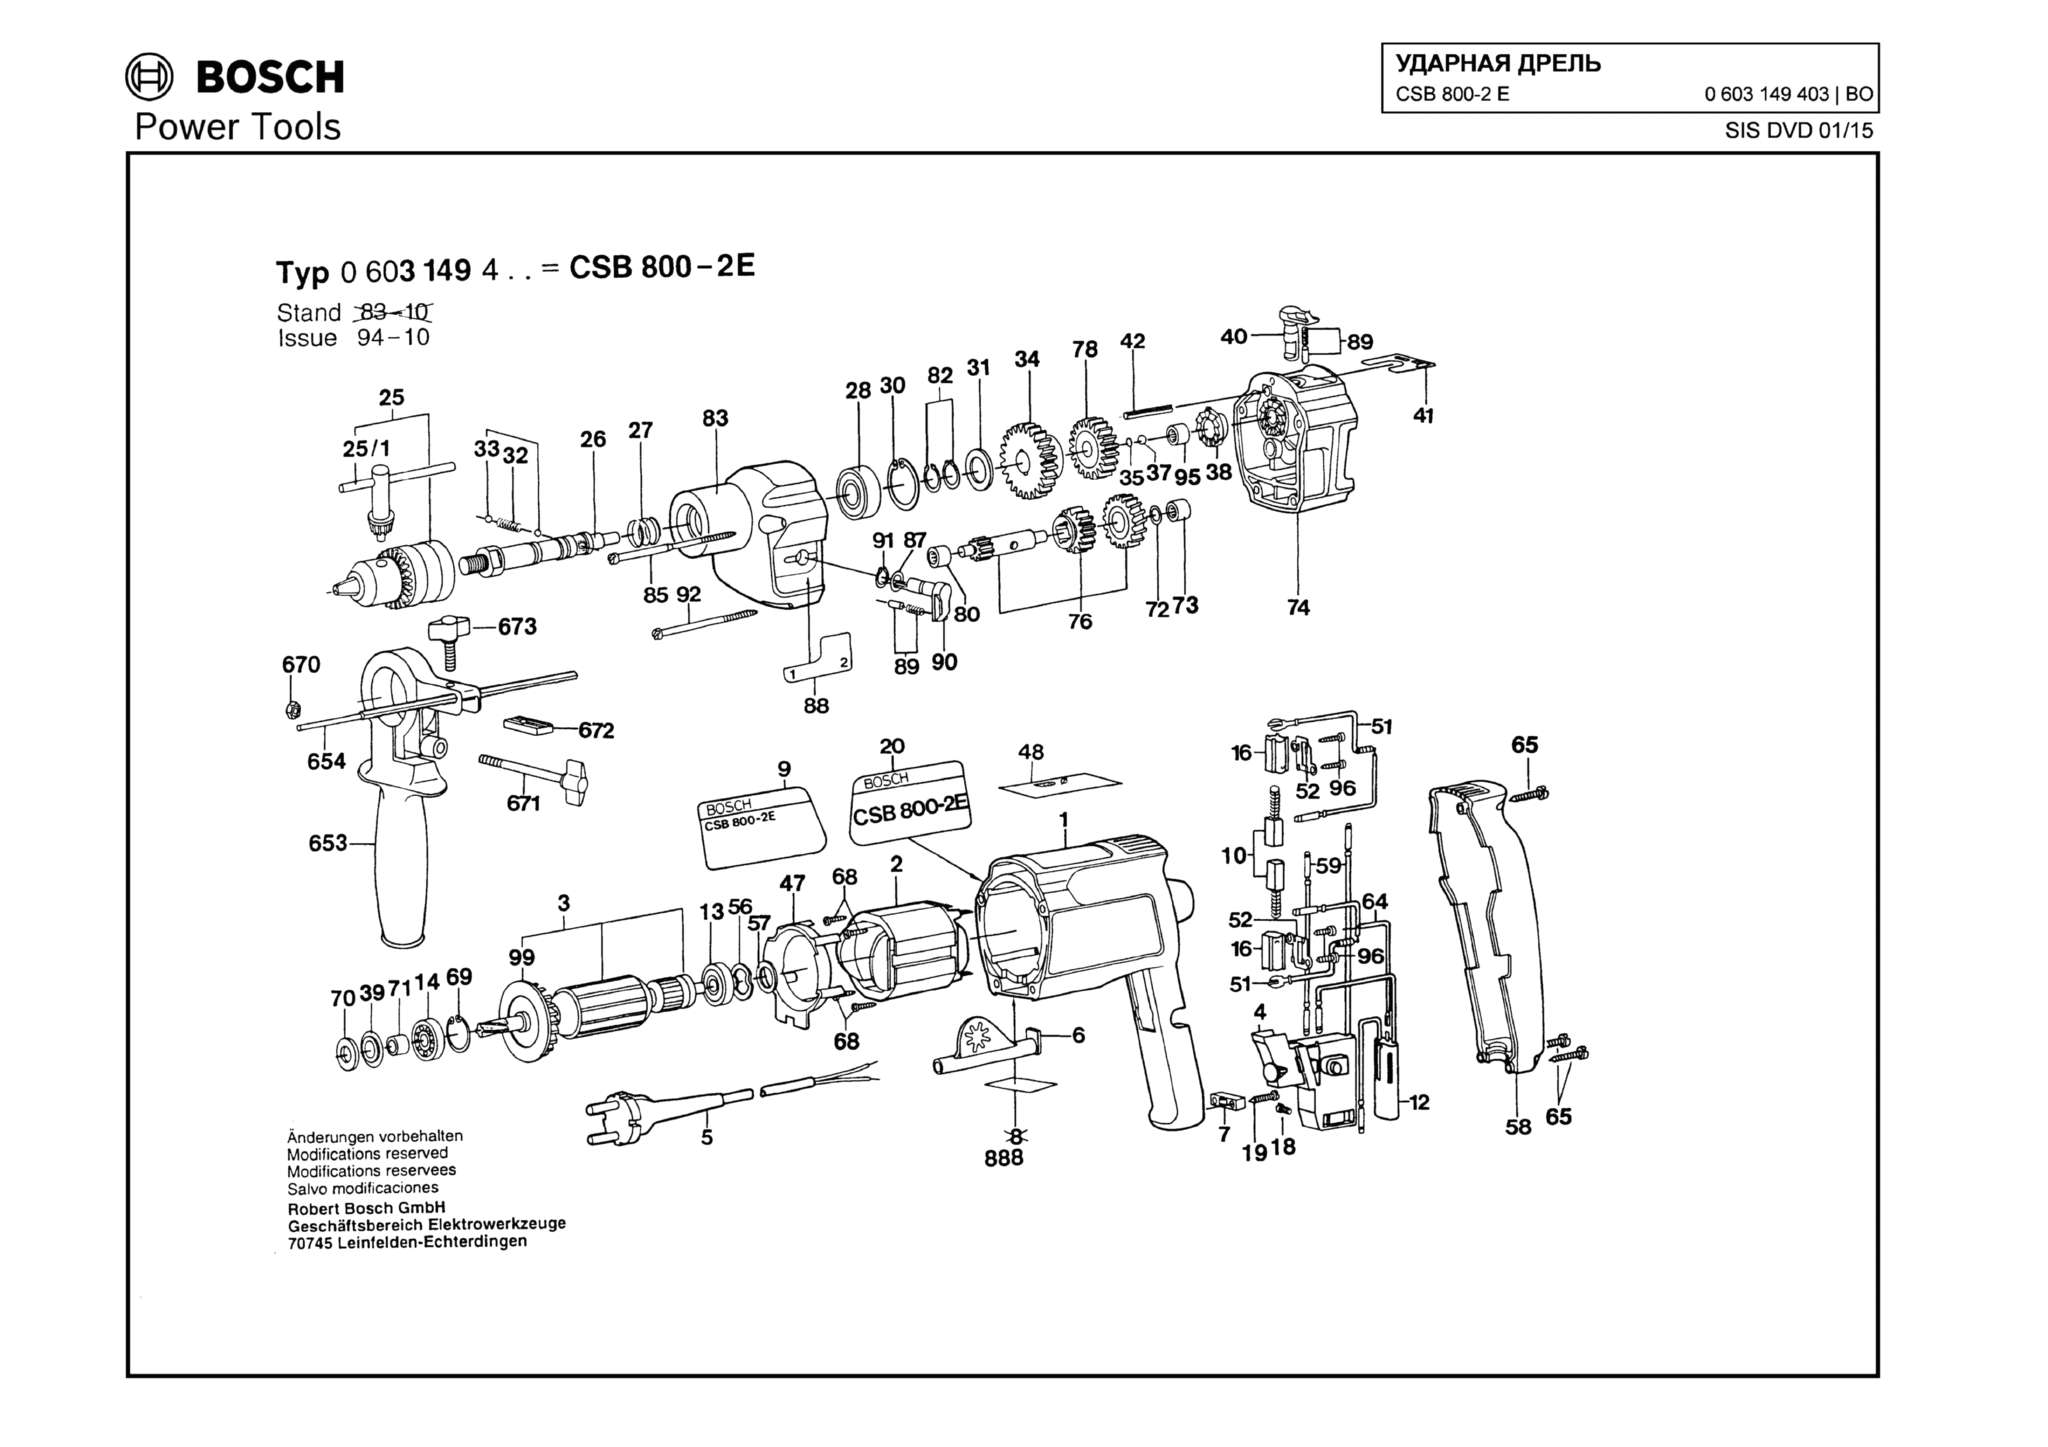 Запчасти, схема и деталировка Bosch CSB 800-2 E (ТИП 0603149403)